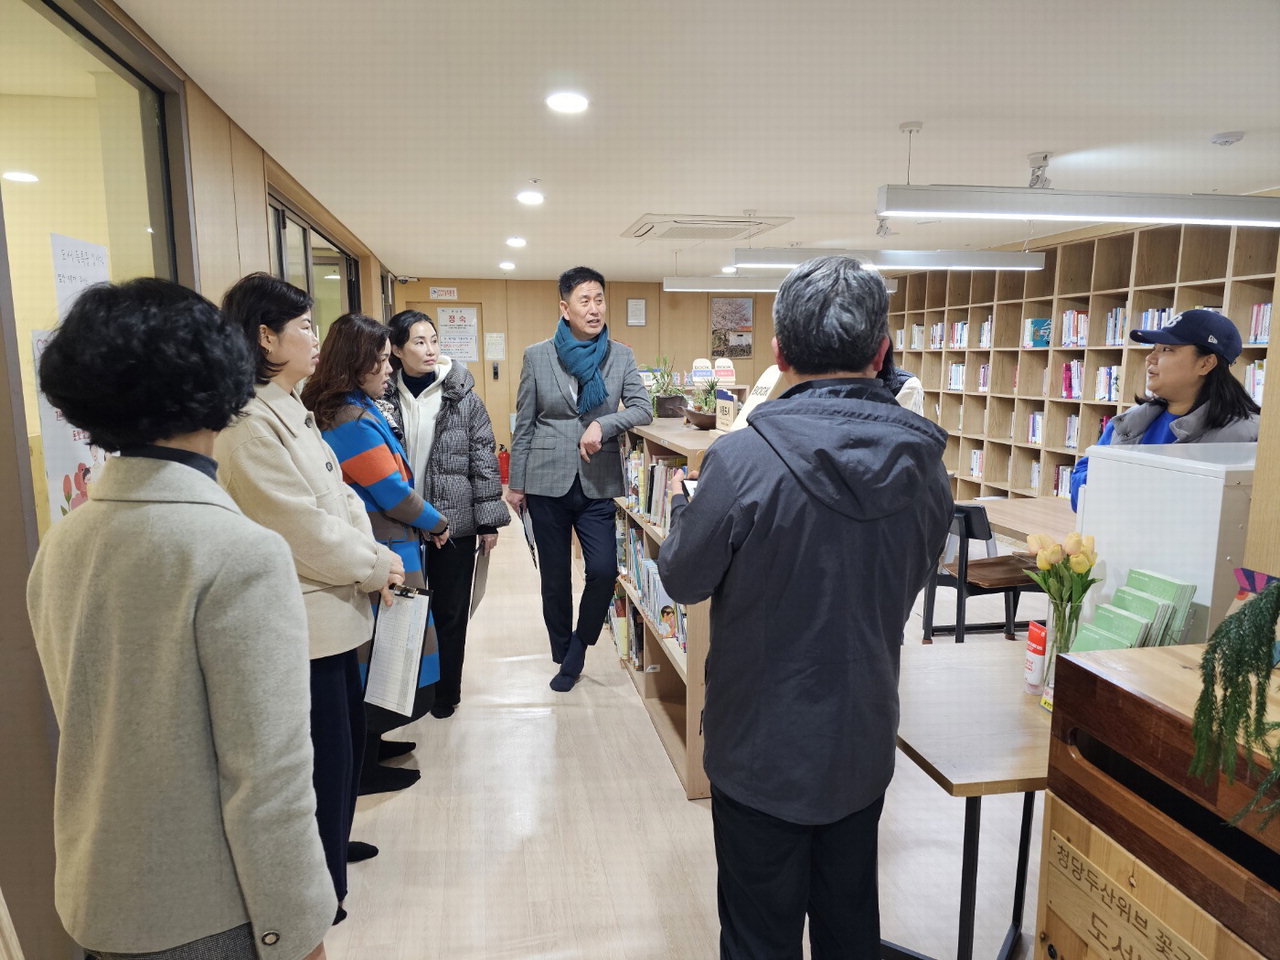 천안시사립작은도서관협의회 위원들이 7~8일 이틀 동안 보조금 지원사업 신청 사립작은도서관을 방문해 실태조사를 했다./천안시